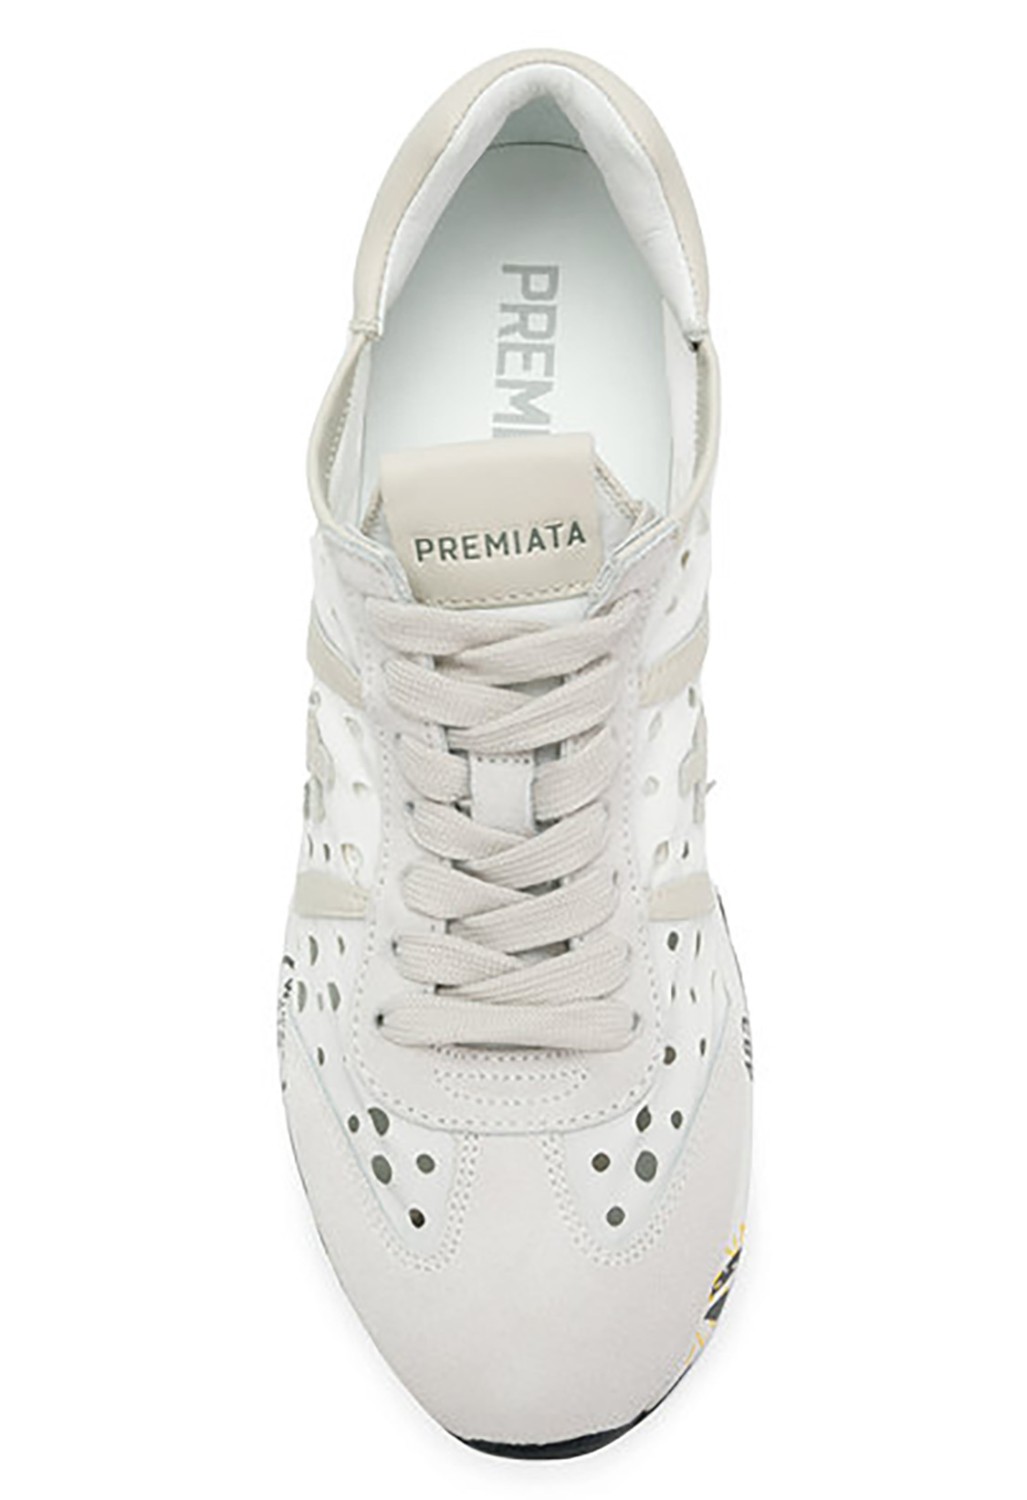 shop Premiata White Saldi Scarpe: Sneakers Premiata White, modello Lucy D, in nylon traforato e dettagli in pelle, color bianco.

Composizione: 80% nylon, 20% pelle.
Suola: 100% gomma. number 1199